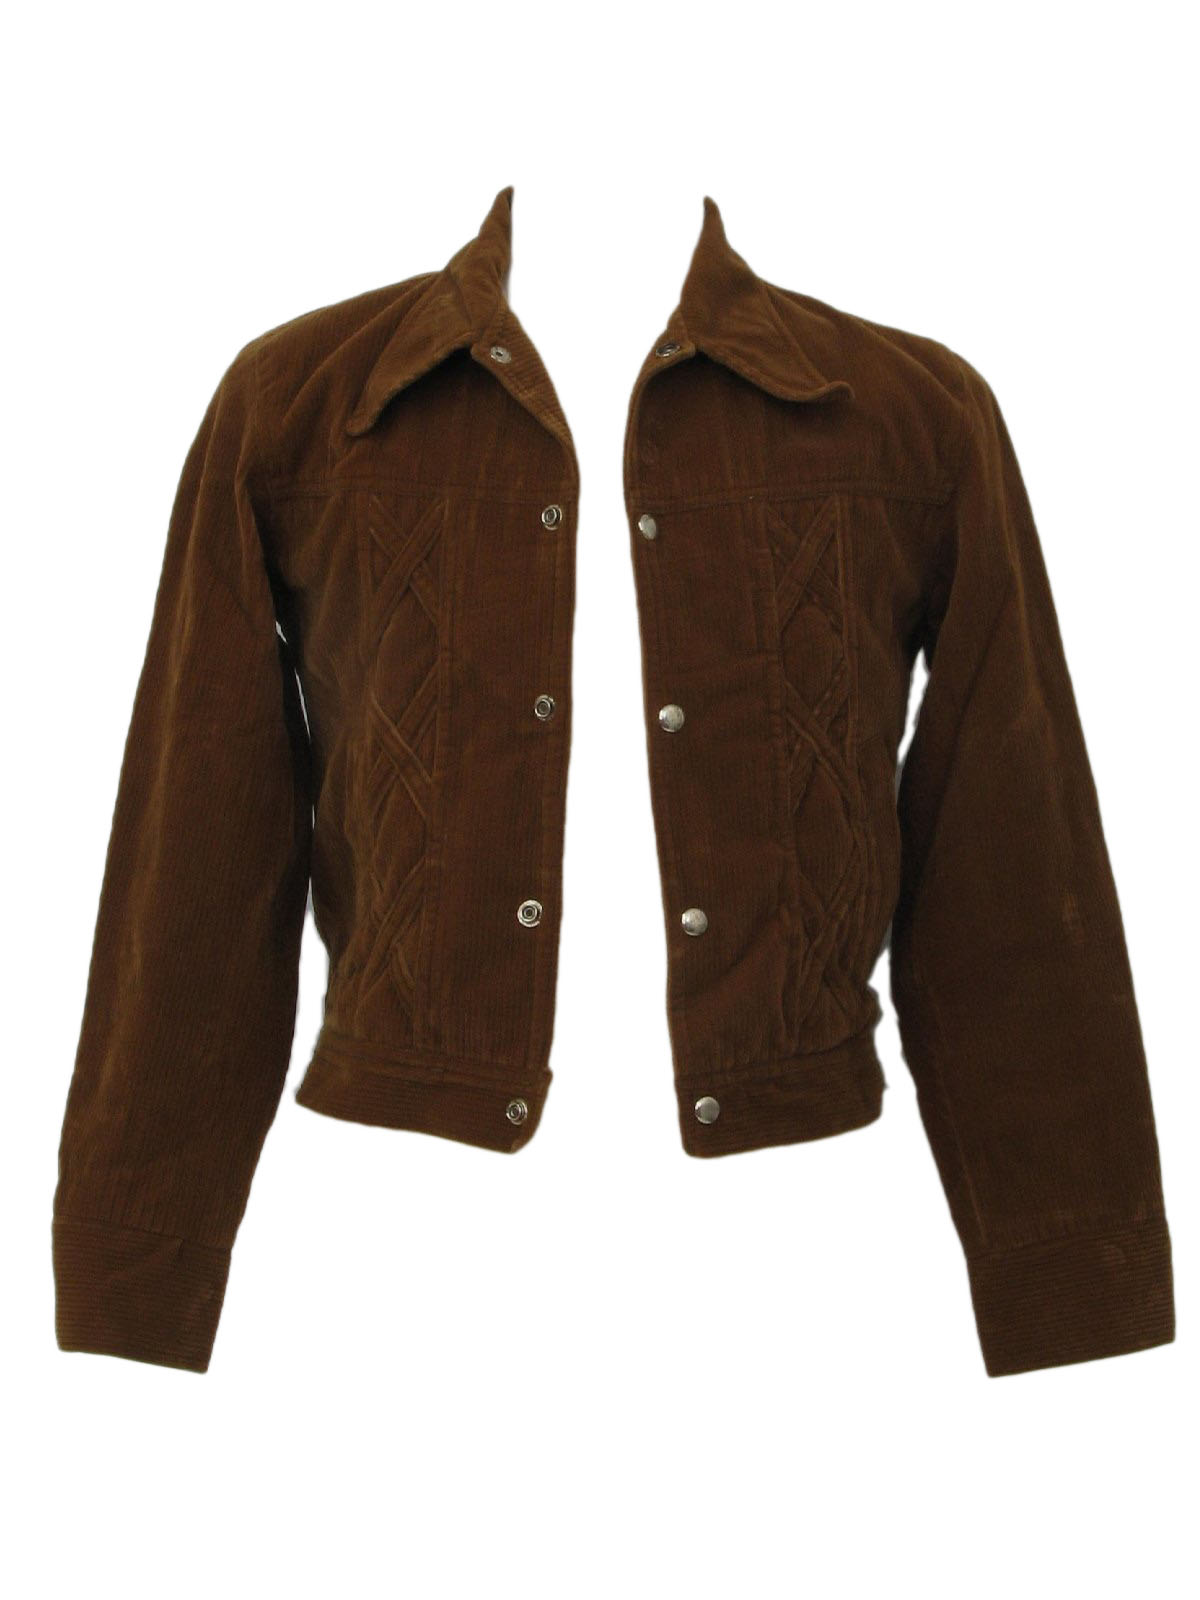 1970's Jacket (Missing Label): 70s -Missing Label- Unisex Boys or ...